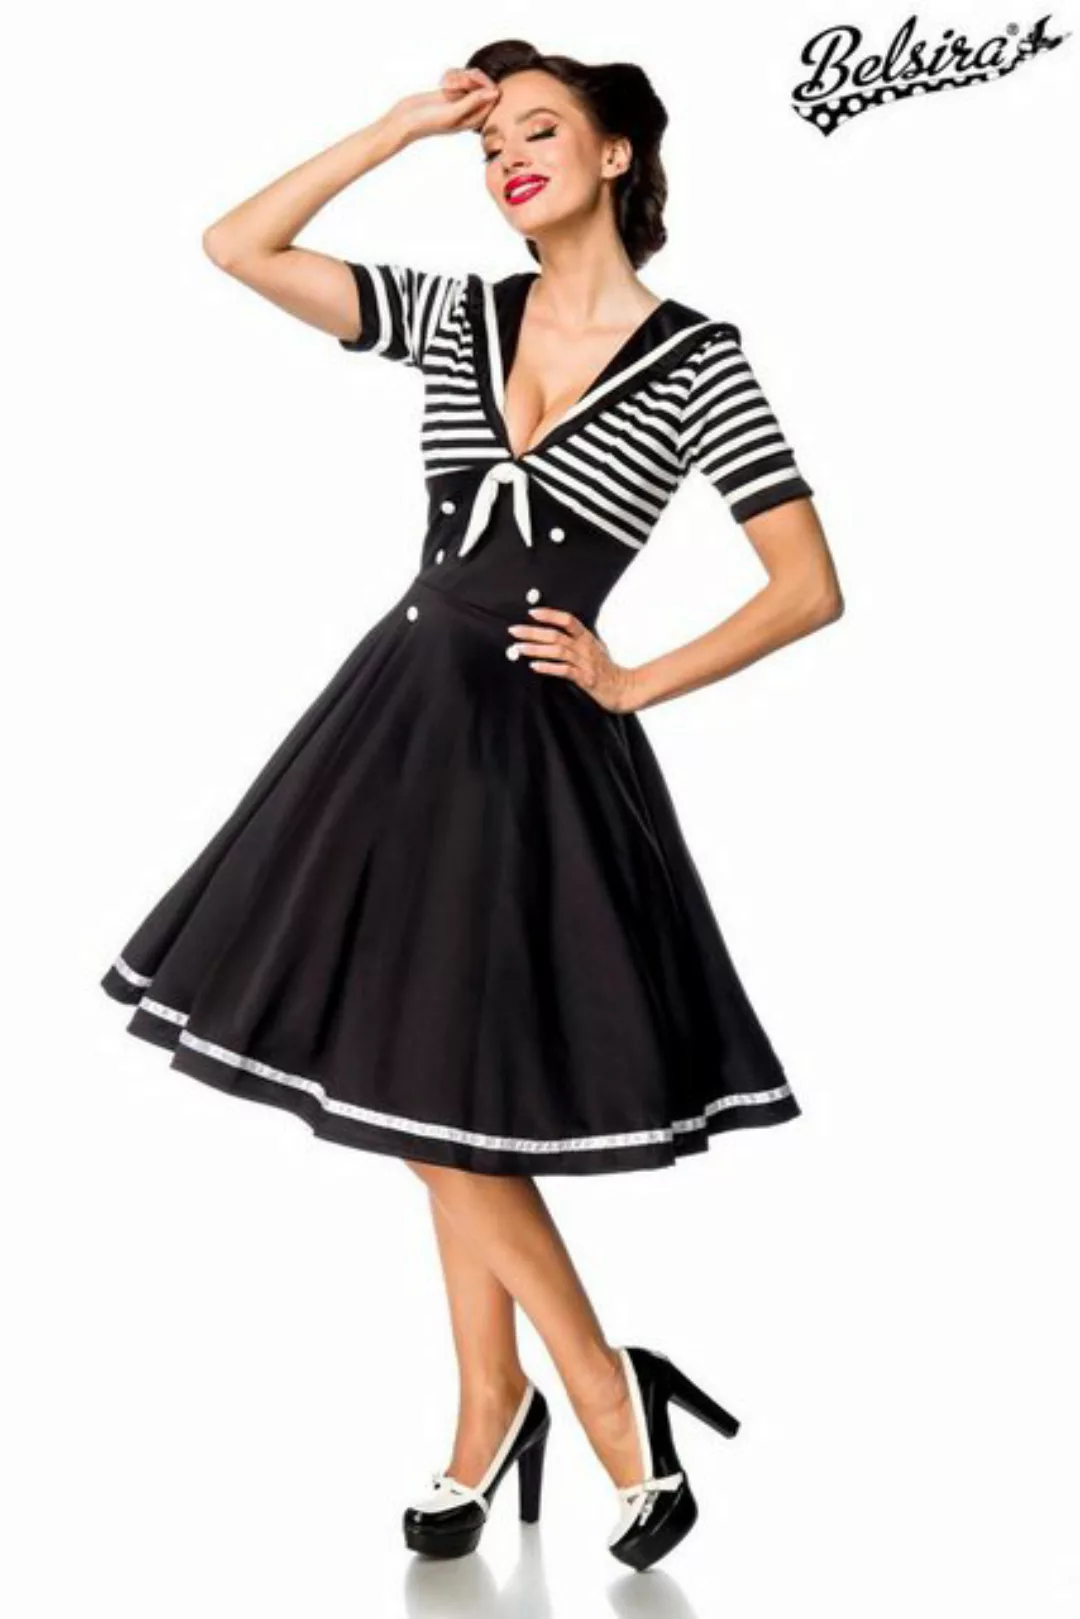 BELSIRA Trachtenkleid Belsira - Swing-Kleid im Marinelook - 2XL - günstig online kaufen